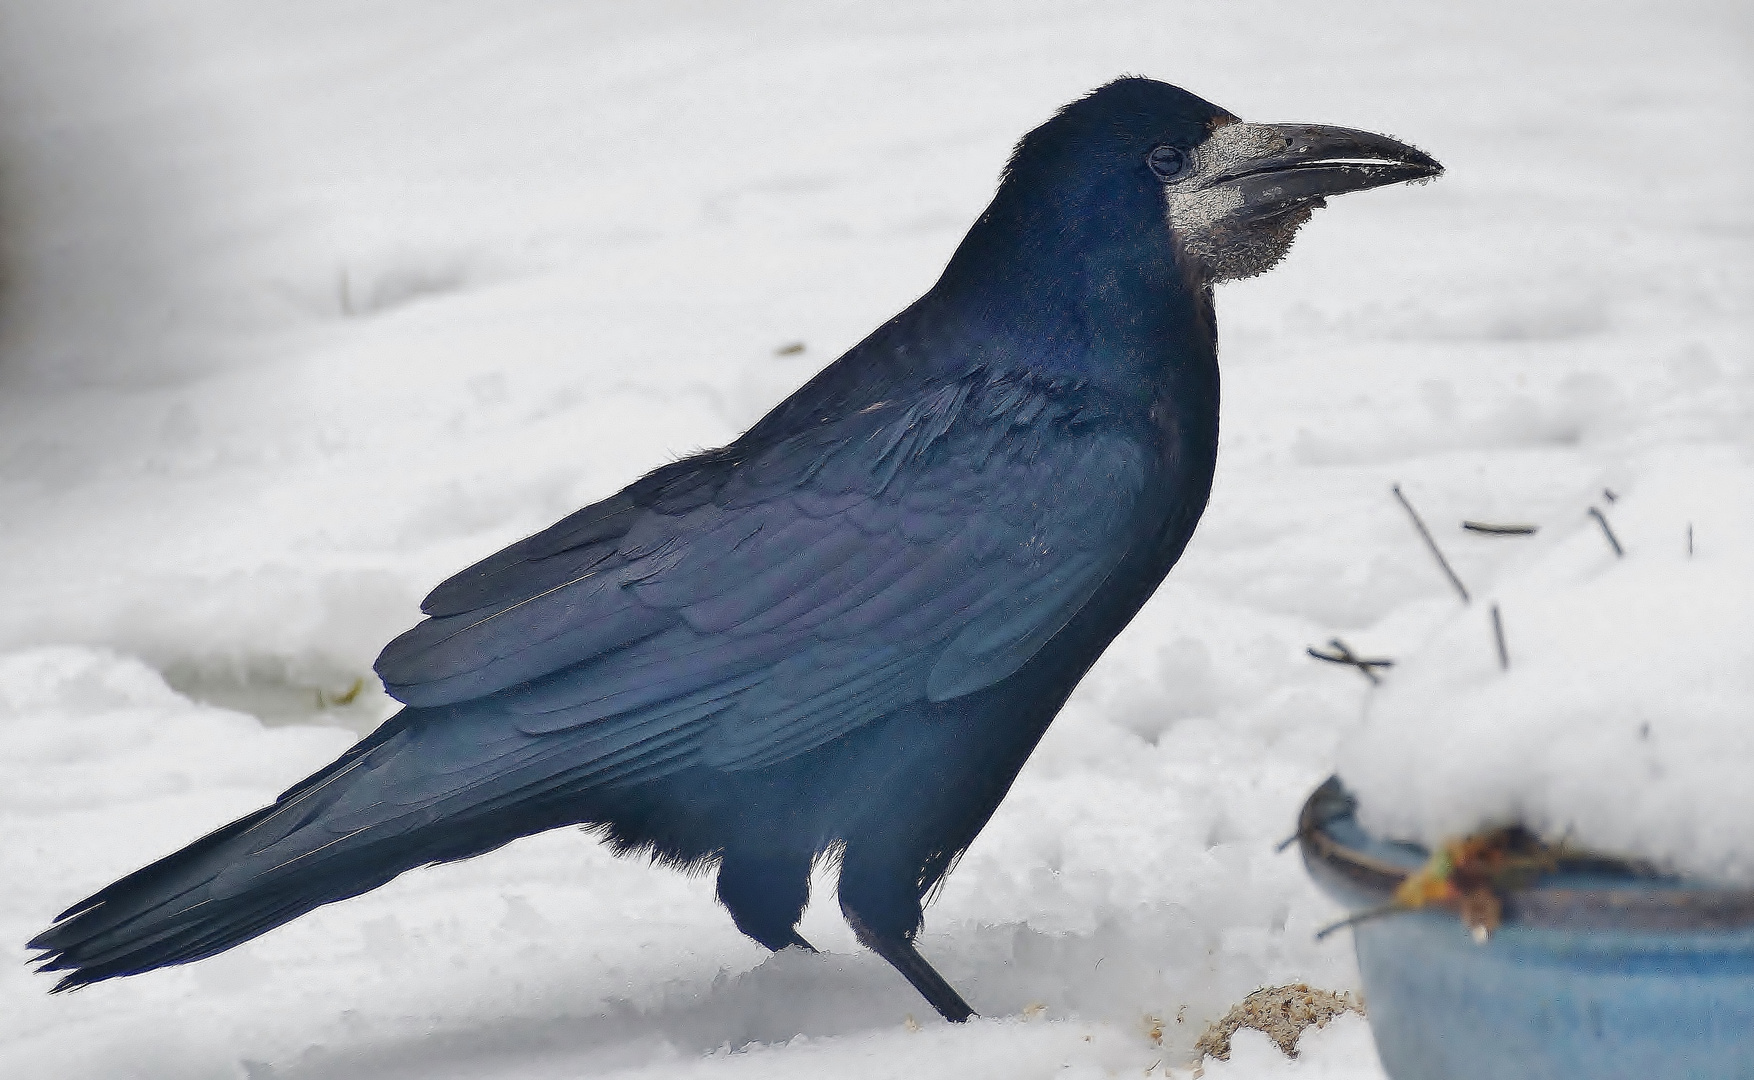 (2) Saatkrähe (Corvus frugilegus) 